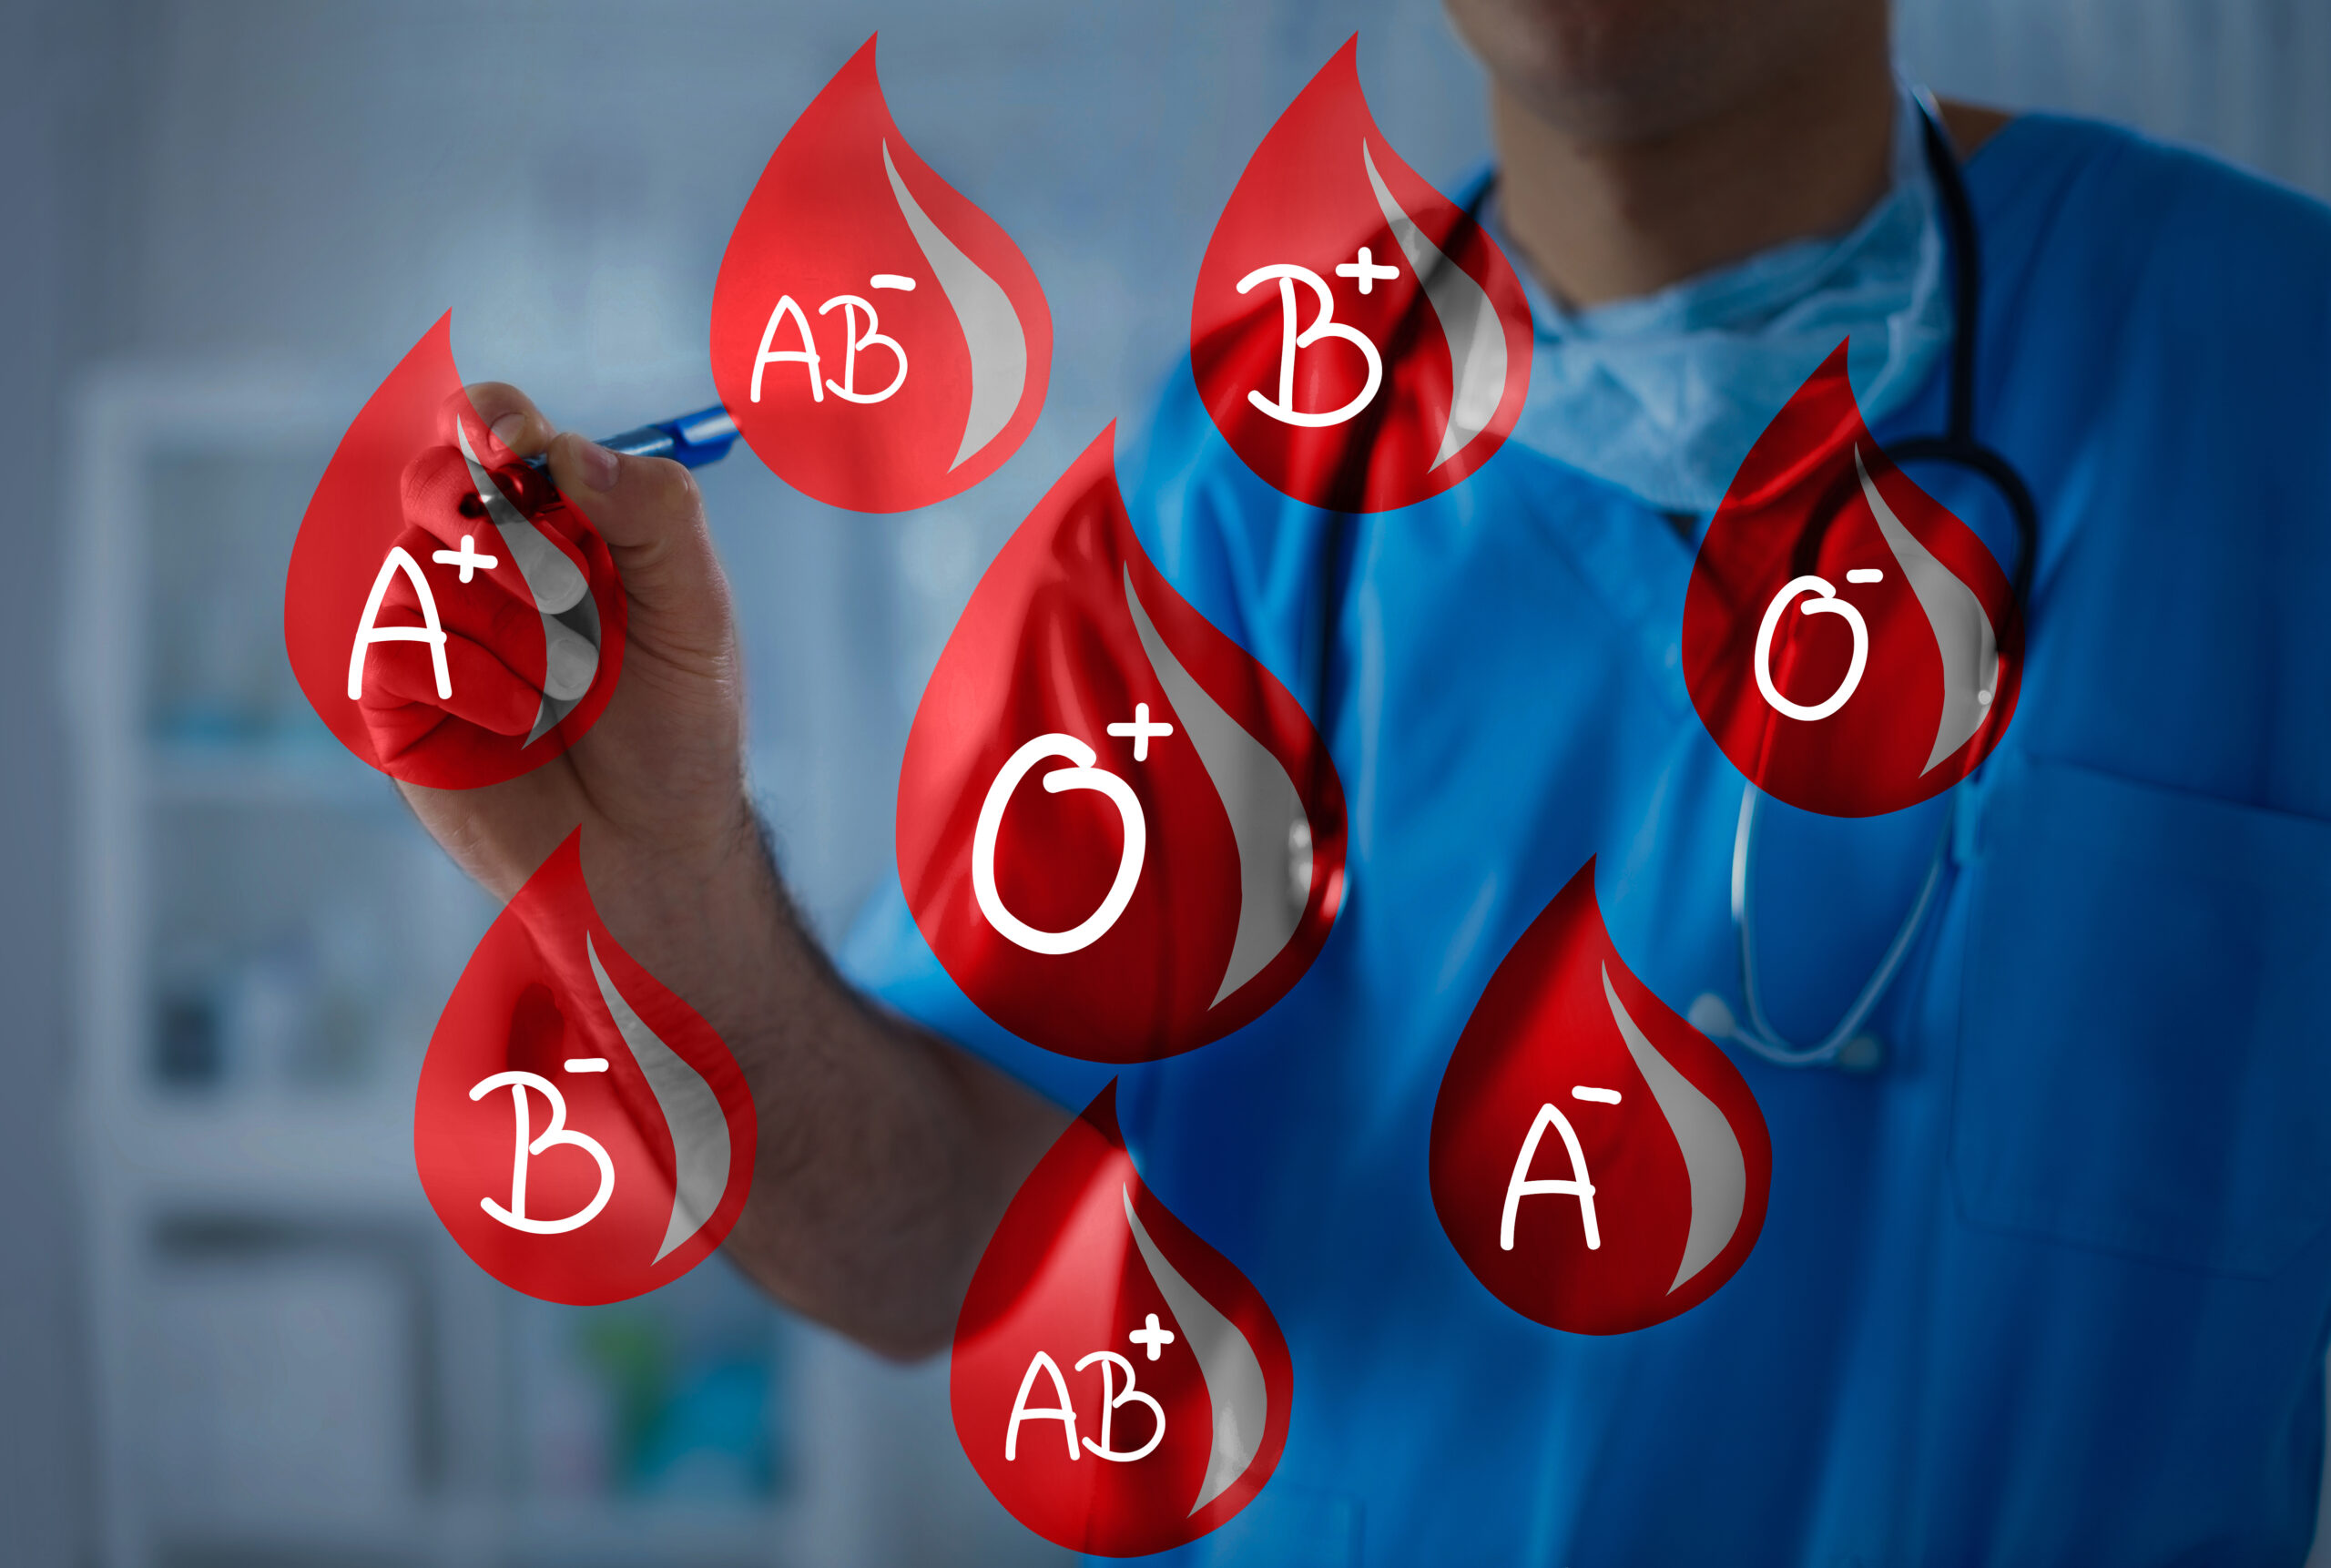 Blood Group & Rhesus factor